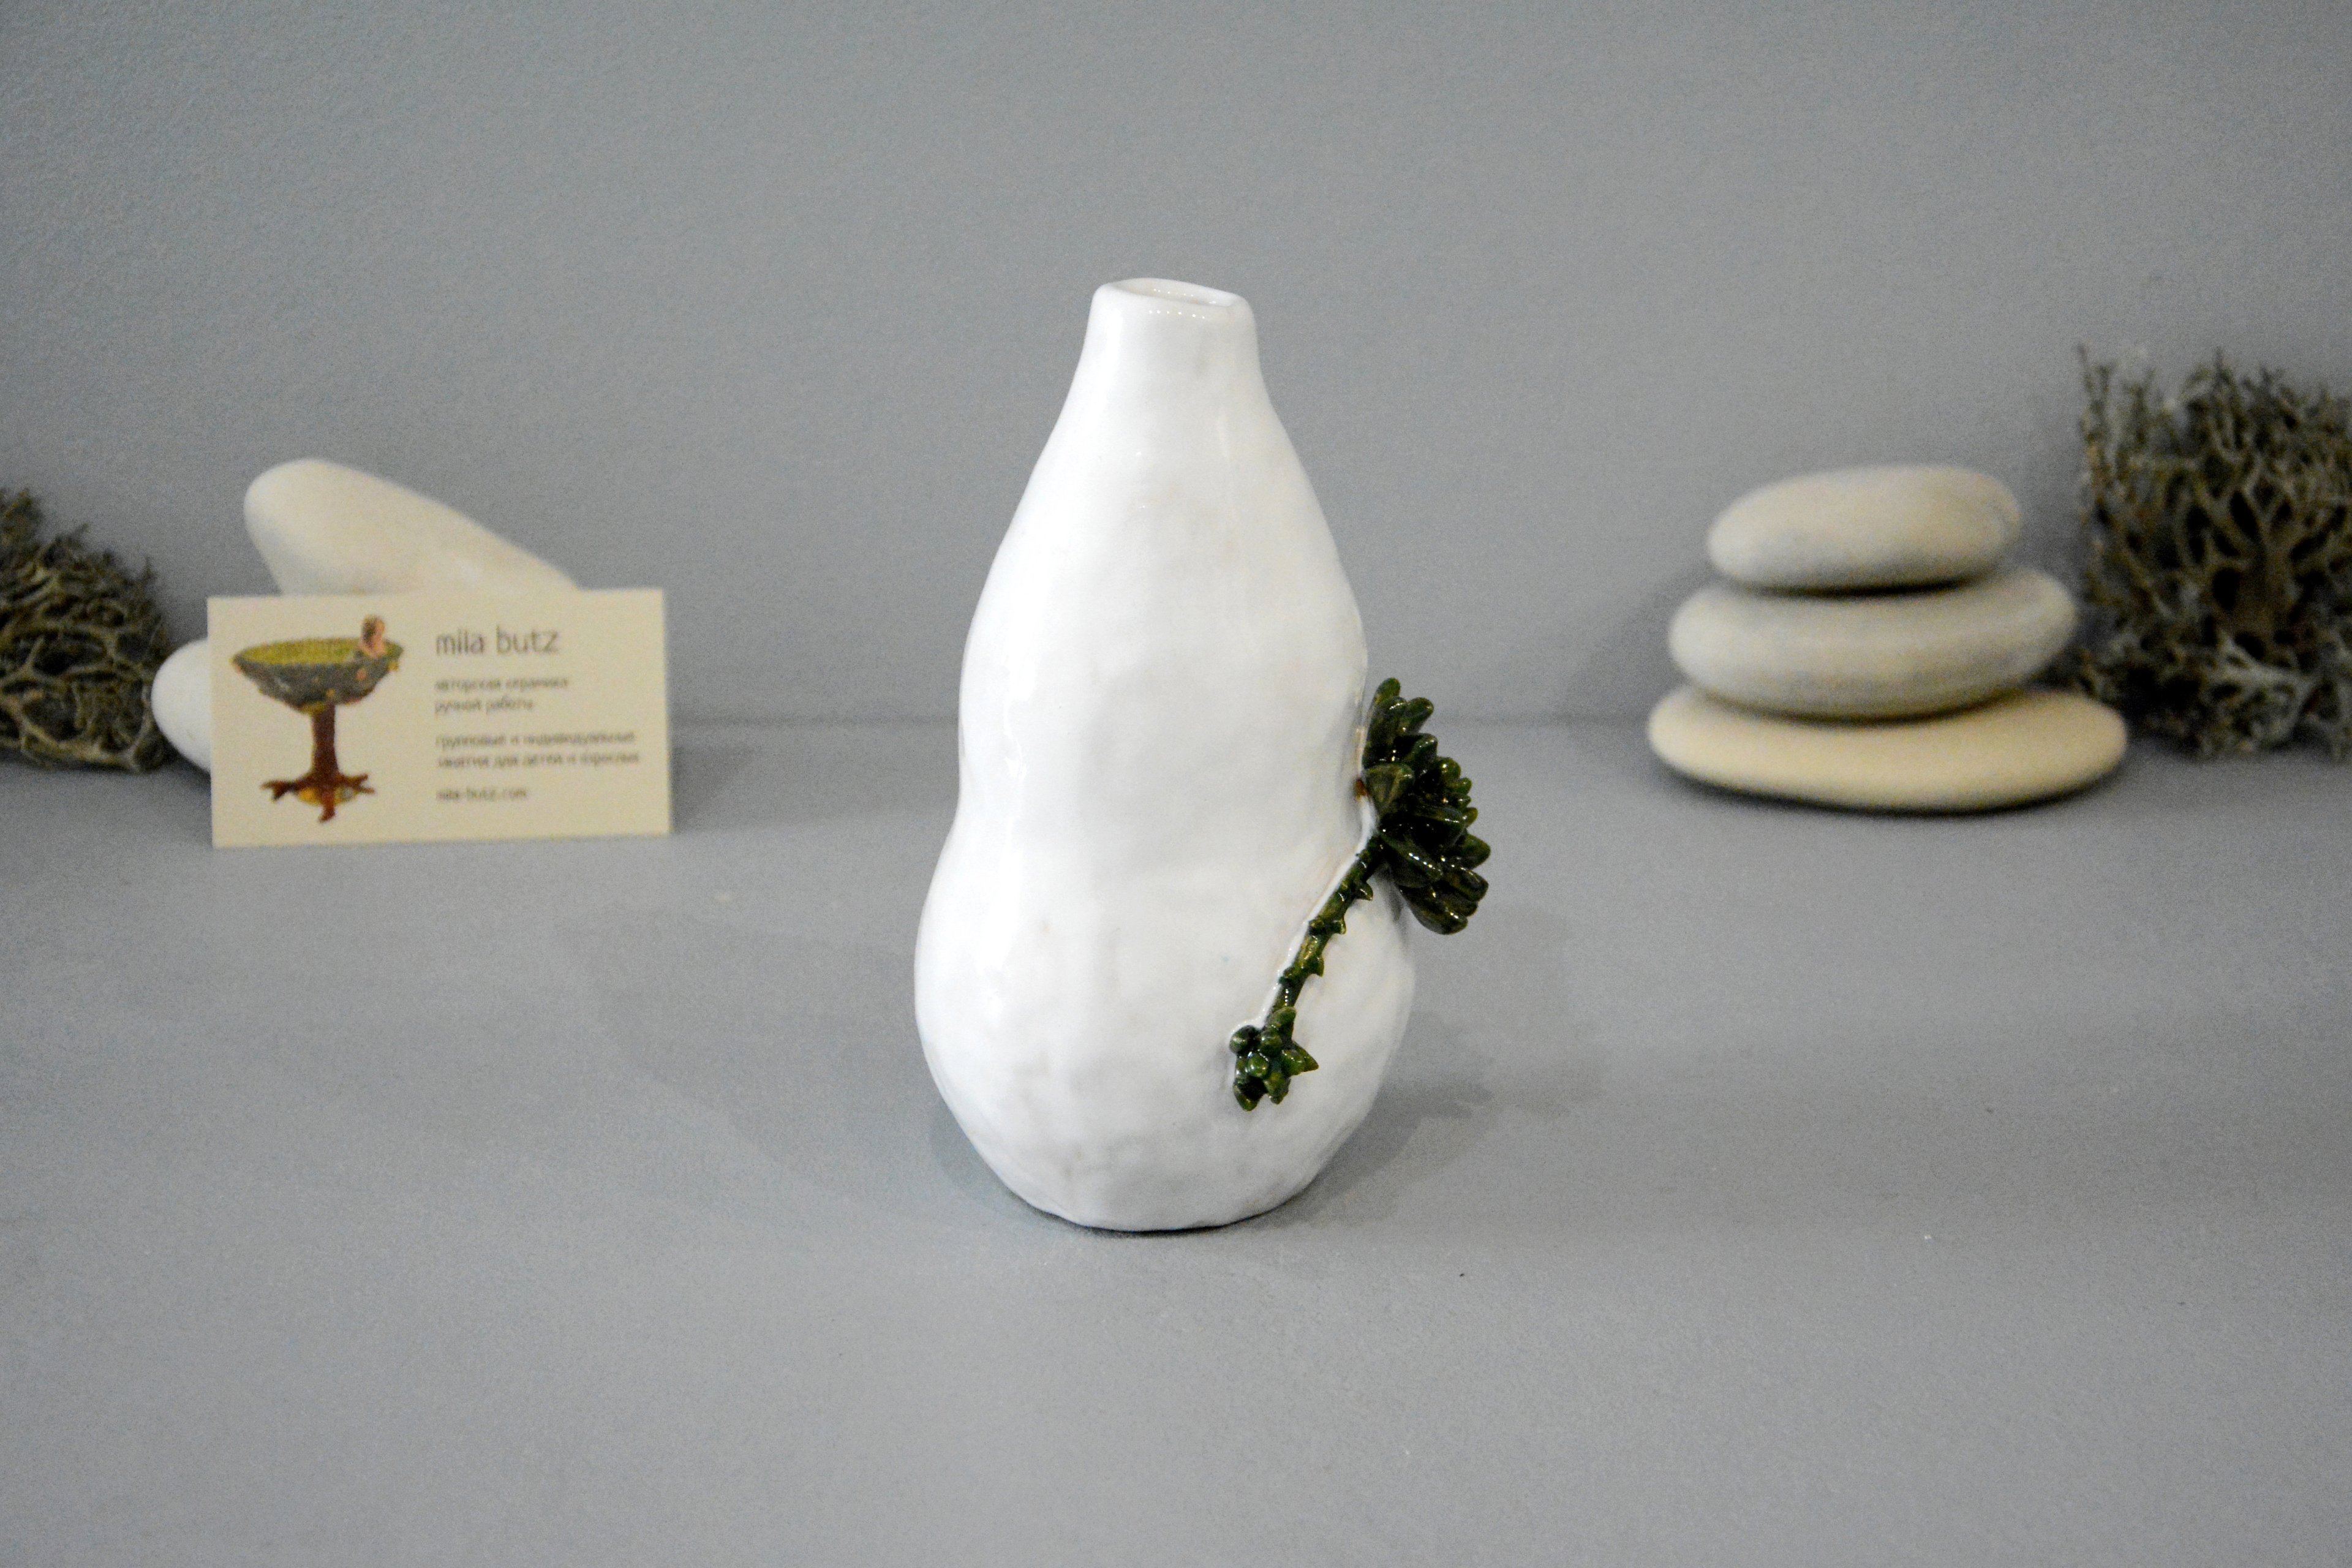 Интерьерная ваза «Эхеверия», высота - 16 см, цвет - белый. Фото 1364.